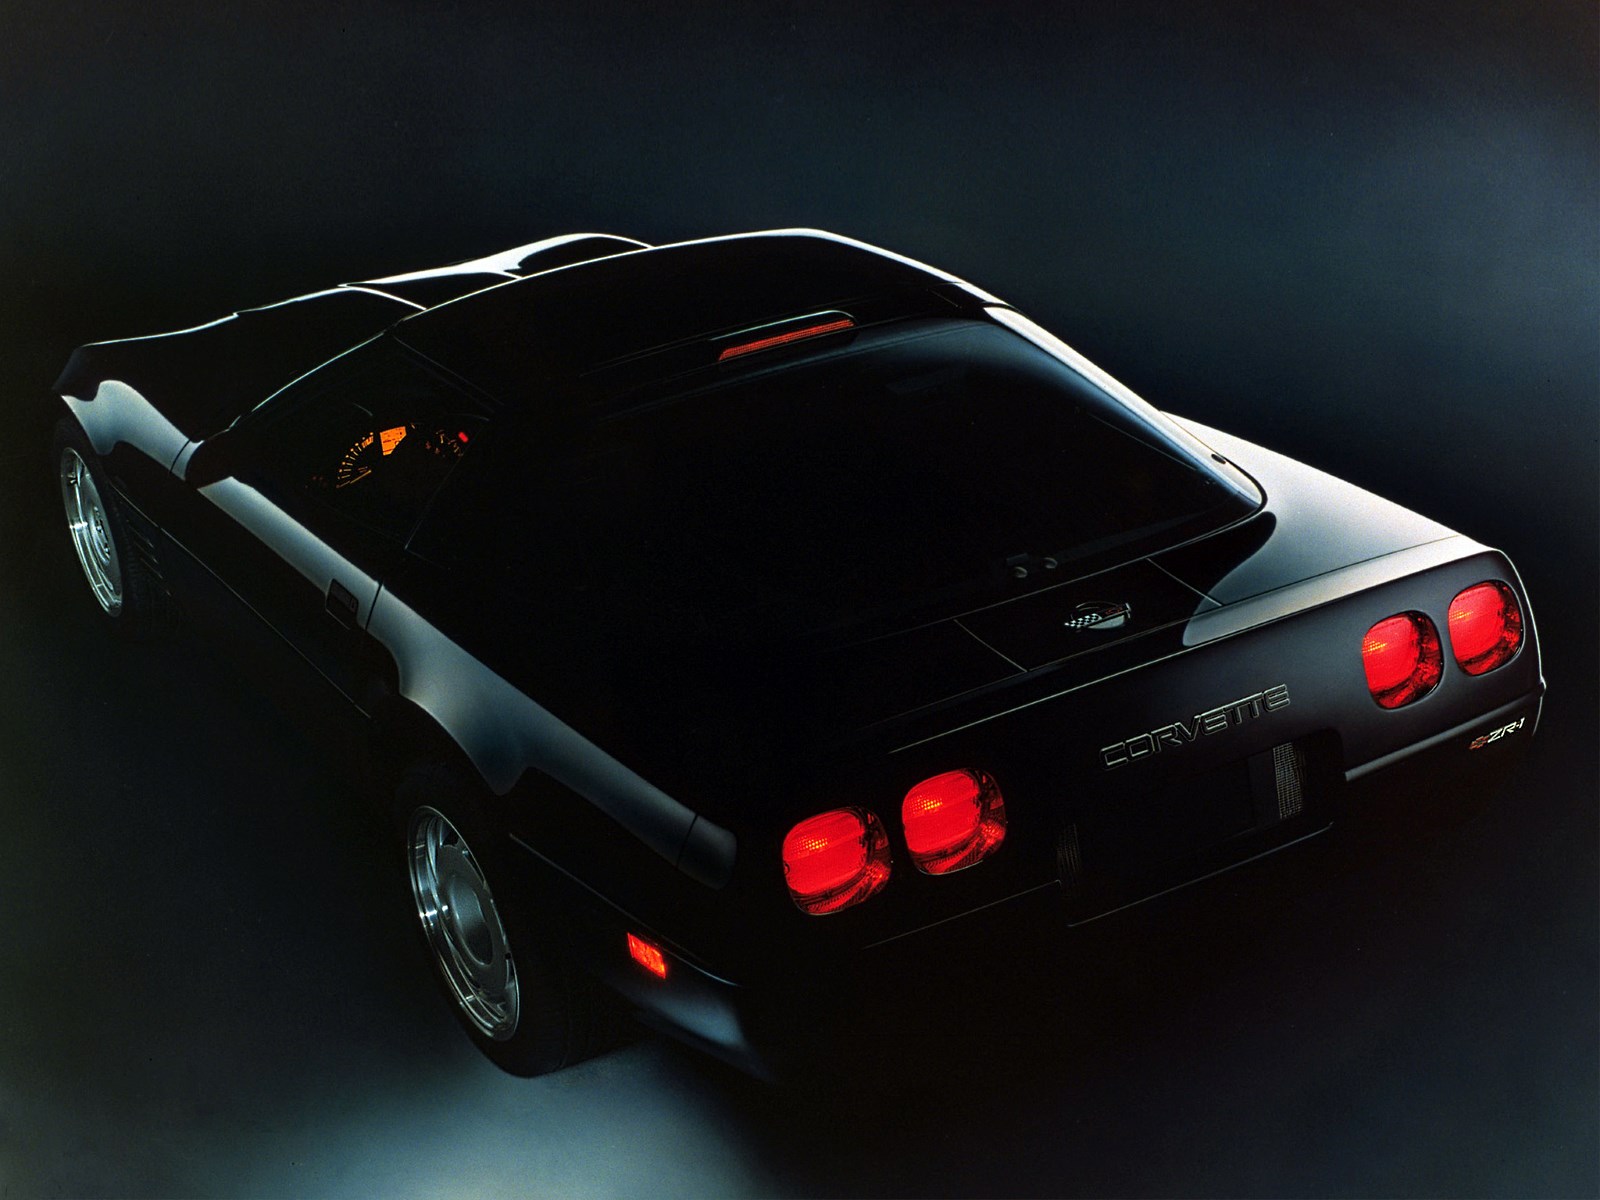 Chevrolet Corvette C4 to auto marzeń wielu osób. Oto jego